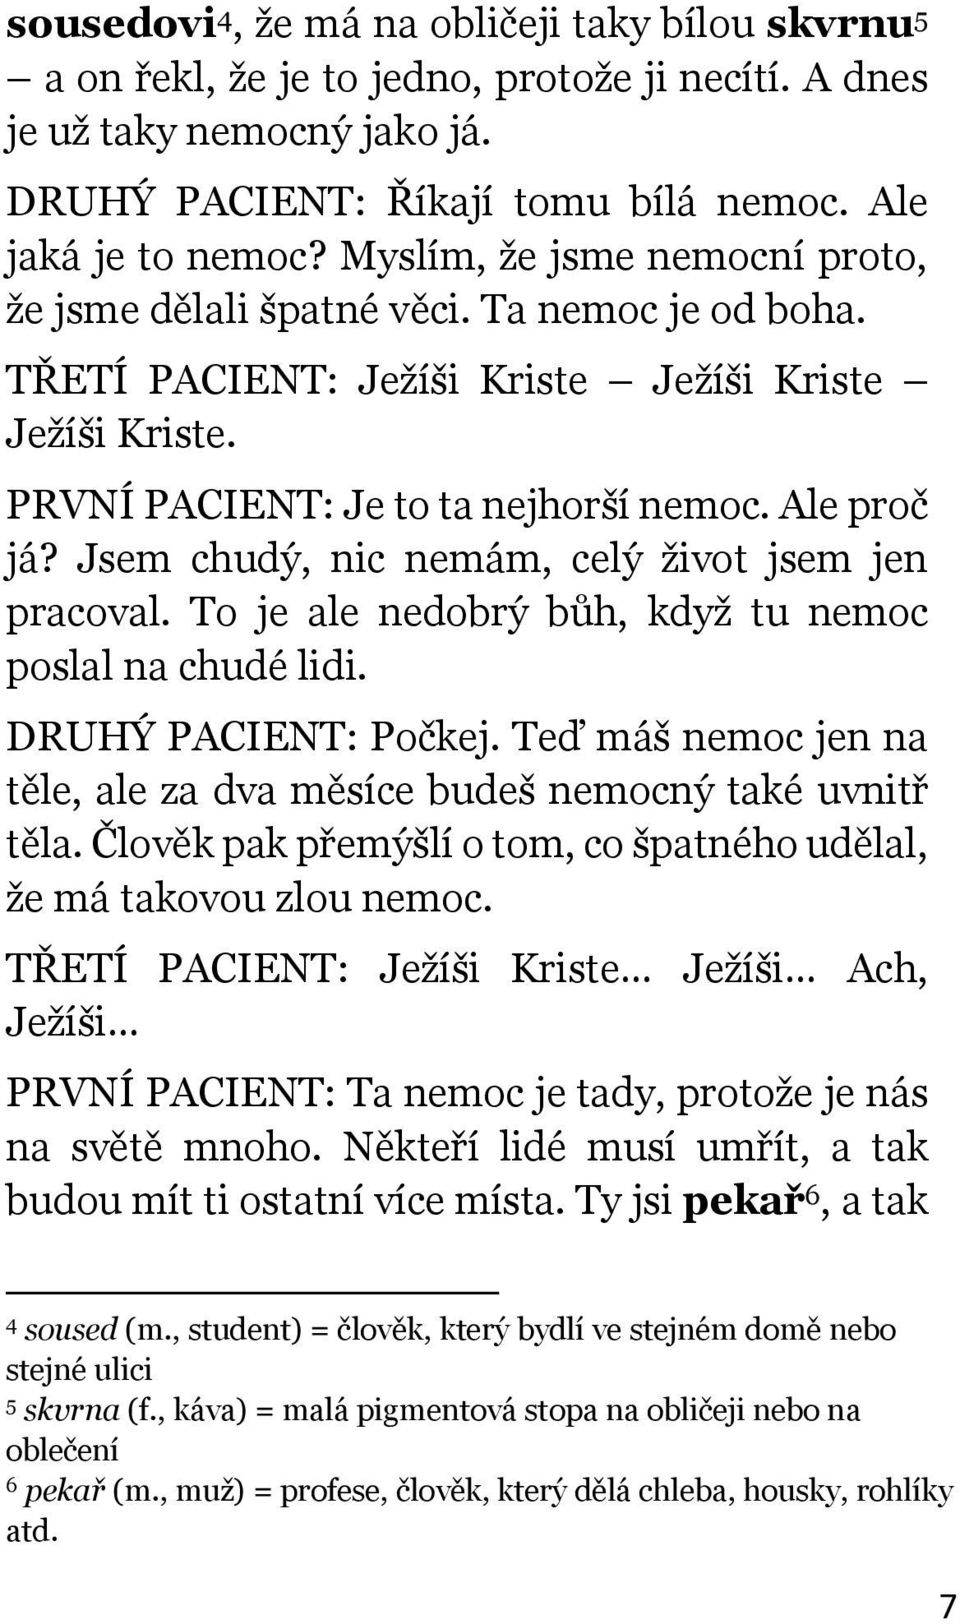 Karel Čapek BÍLÁ NEMOC (1937) - PDF Stažení zdarma